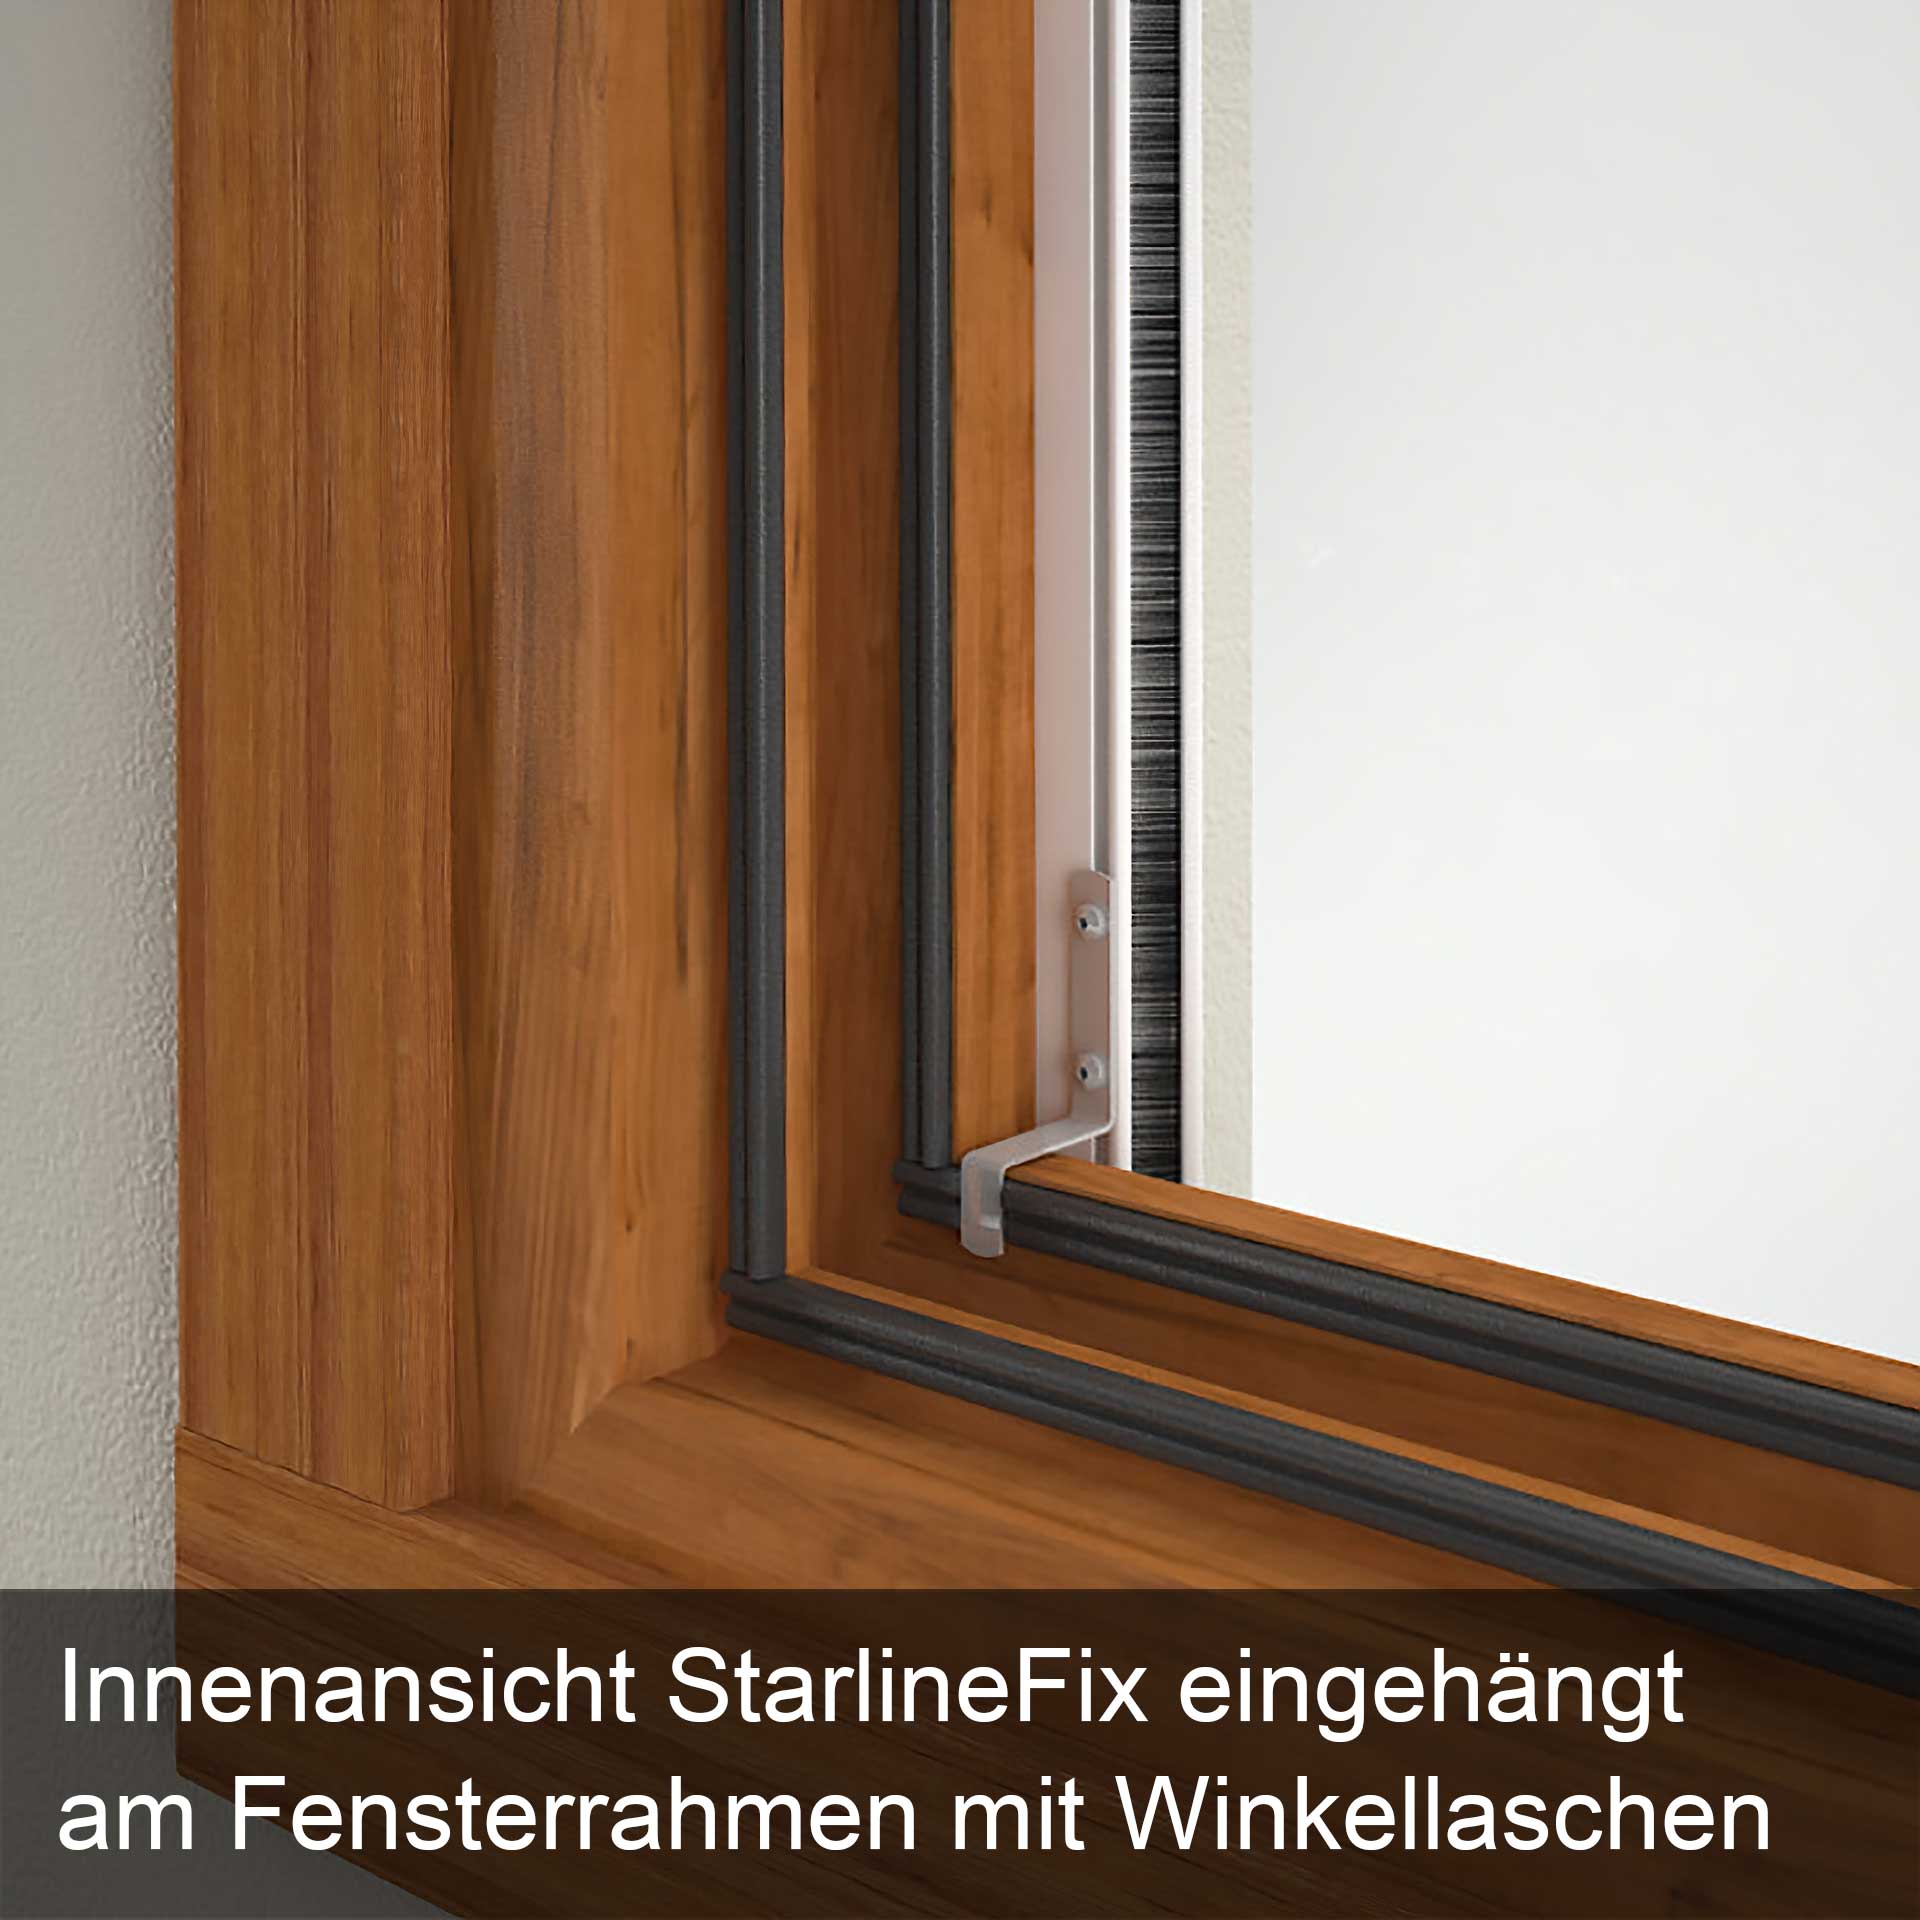 Das Insektenrollo mit der wohl schnellsten Befestigung | für Fenster | StarlineFix